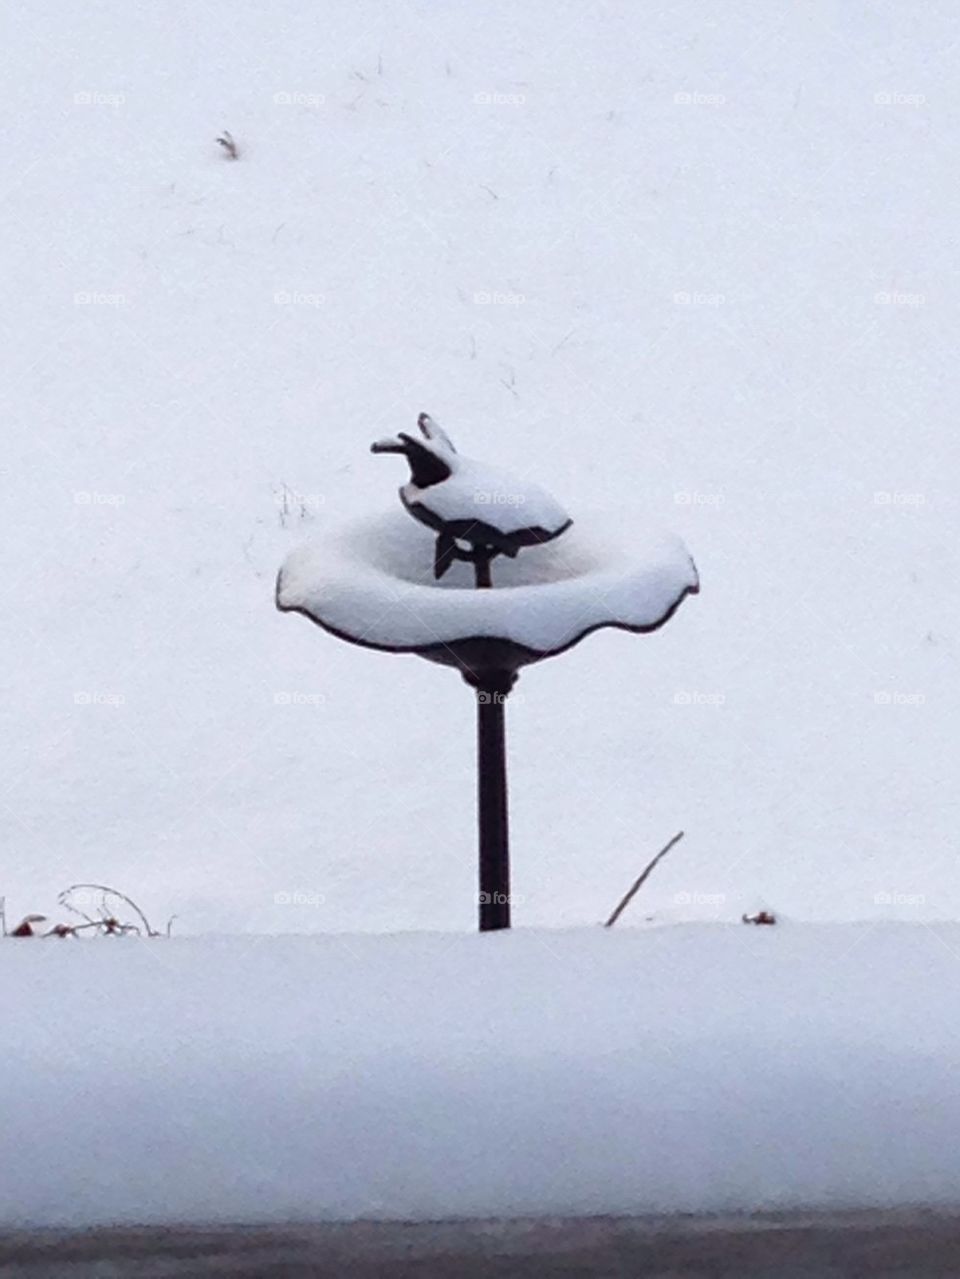 Bird feeder in the Snow
